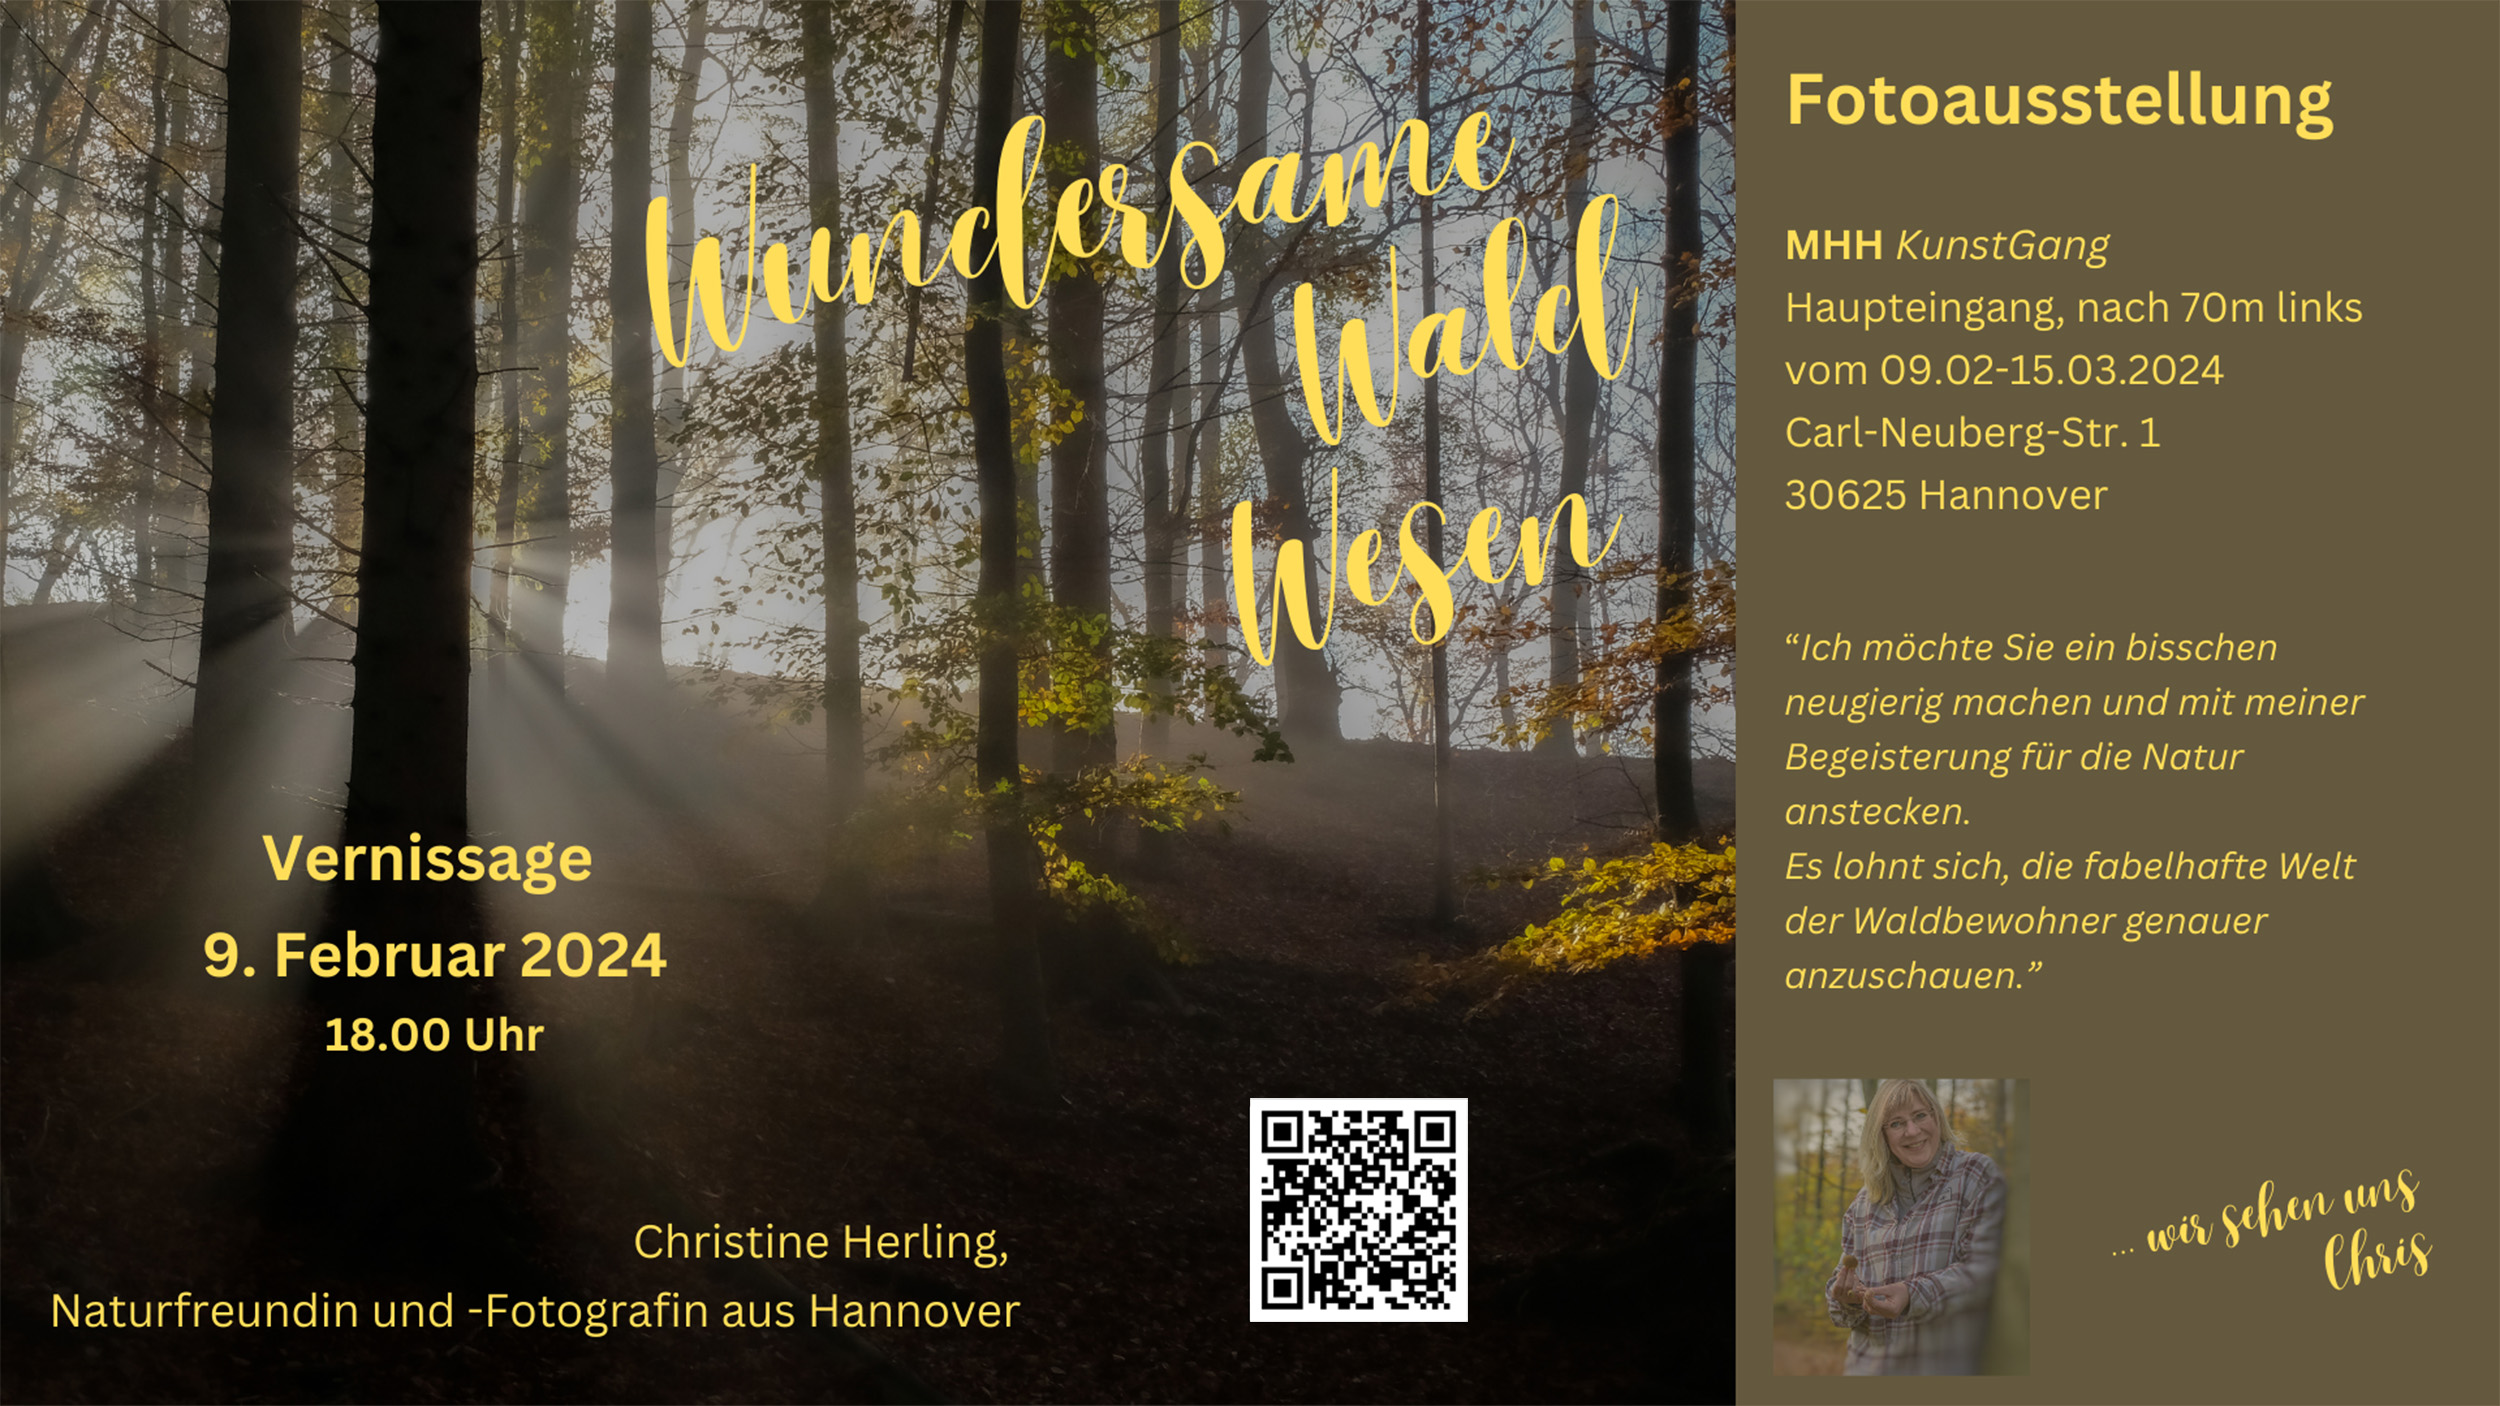 Foto-Ausstellung "Wundersame Waldwesen" von Chris Herling im MHH (Medizinische Hochschule Hannover) KunstGang